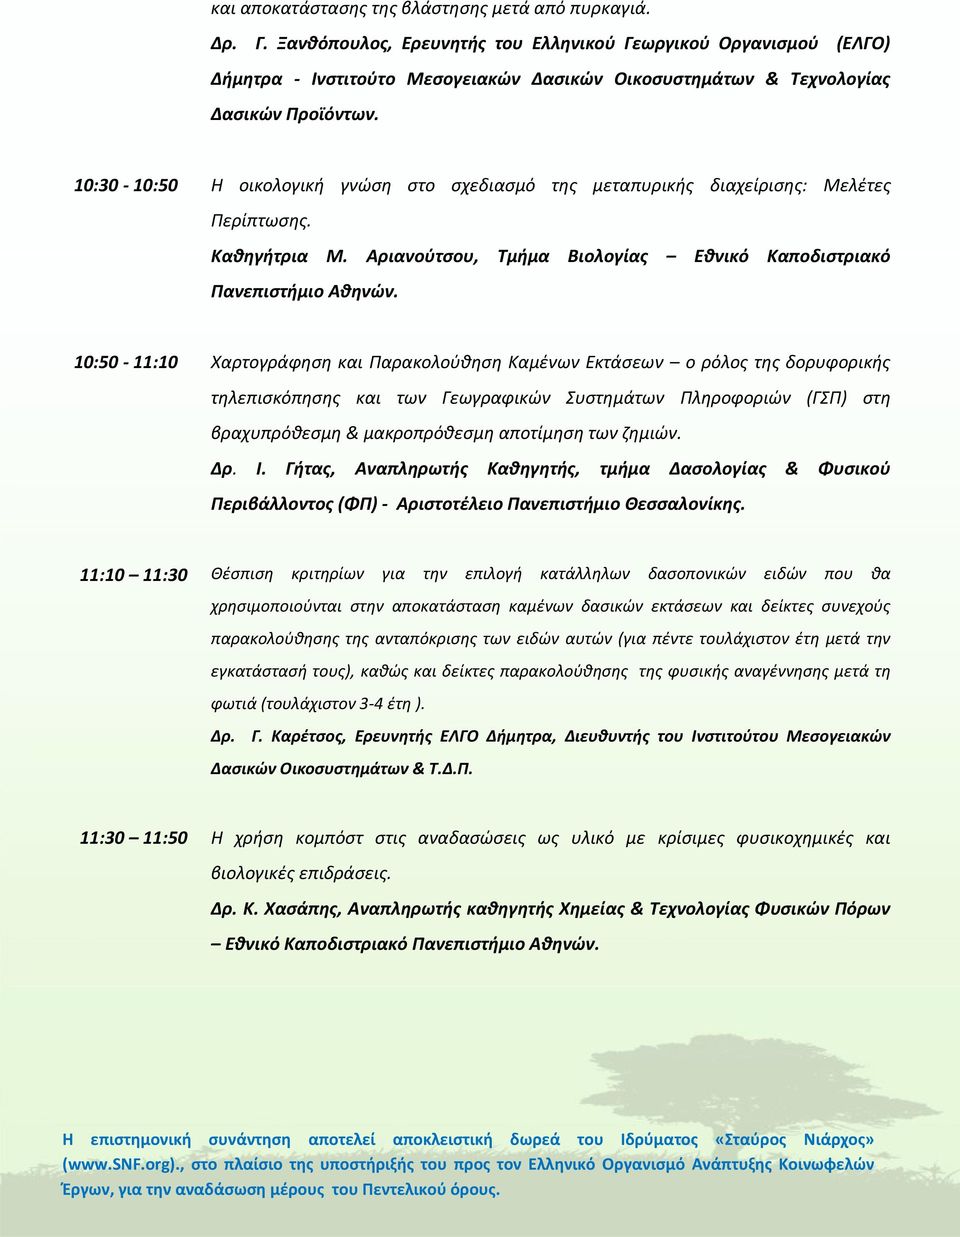 10:30-10:50 Η οικολογική γνώση στο σχεδιασμό της μεταπυρικής διαχείρισης: Μελέτες Περίπτωσης. Καθηγήτρια Μ. Αριανούτσου, Τμήμα Βιολογίας Εθνικό Καποδιστριακό Πανεπιστήμιο Αθηνών.